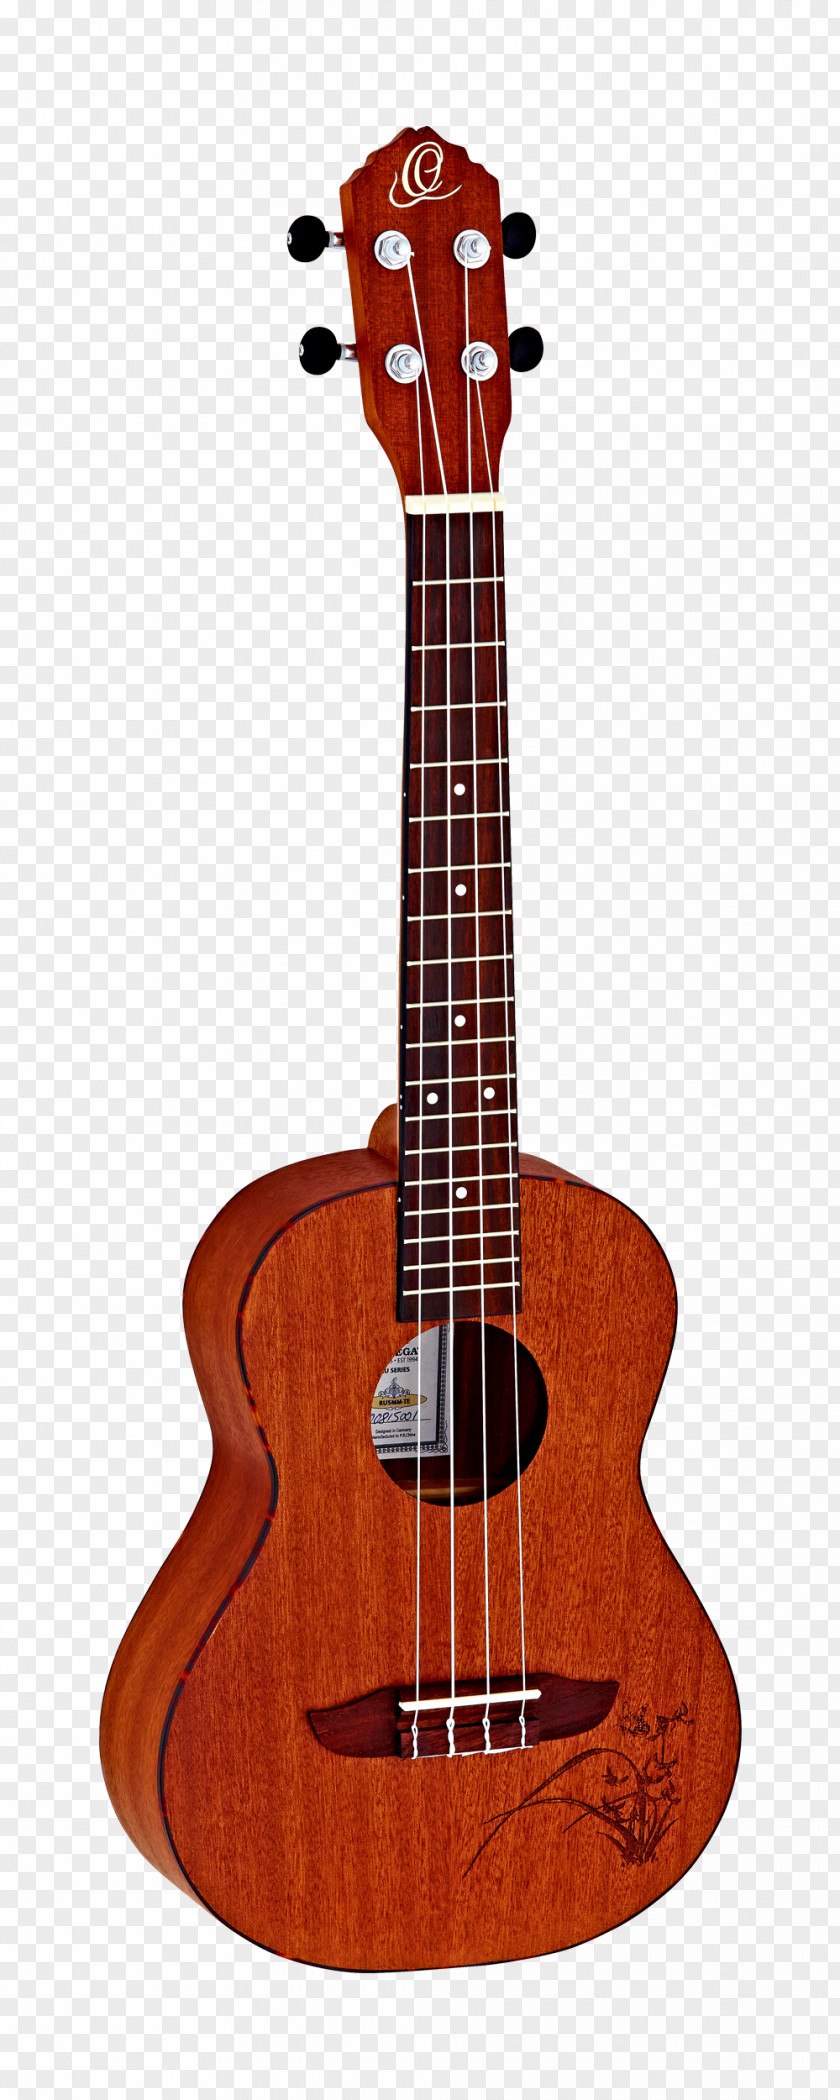 Amancio Ortega Ukulele Guitar String Instruments Musical PNG